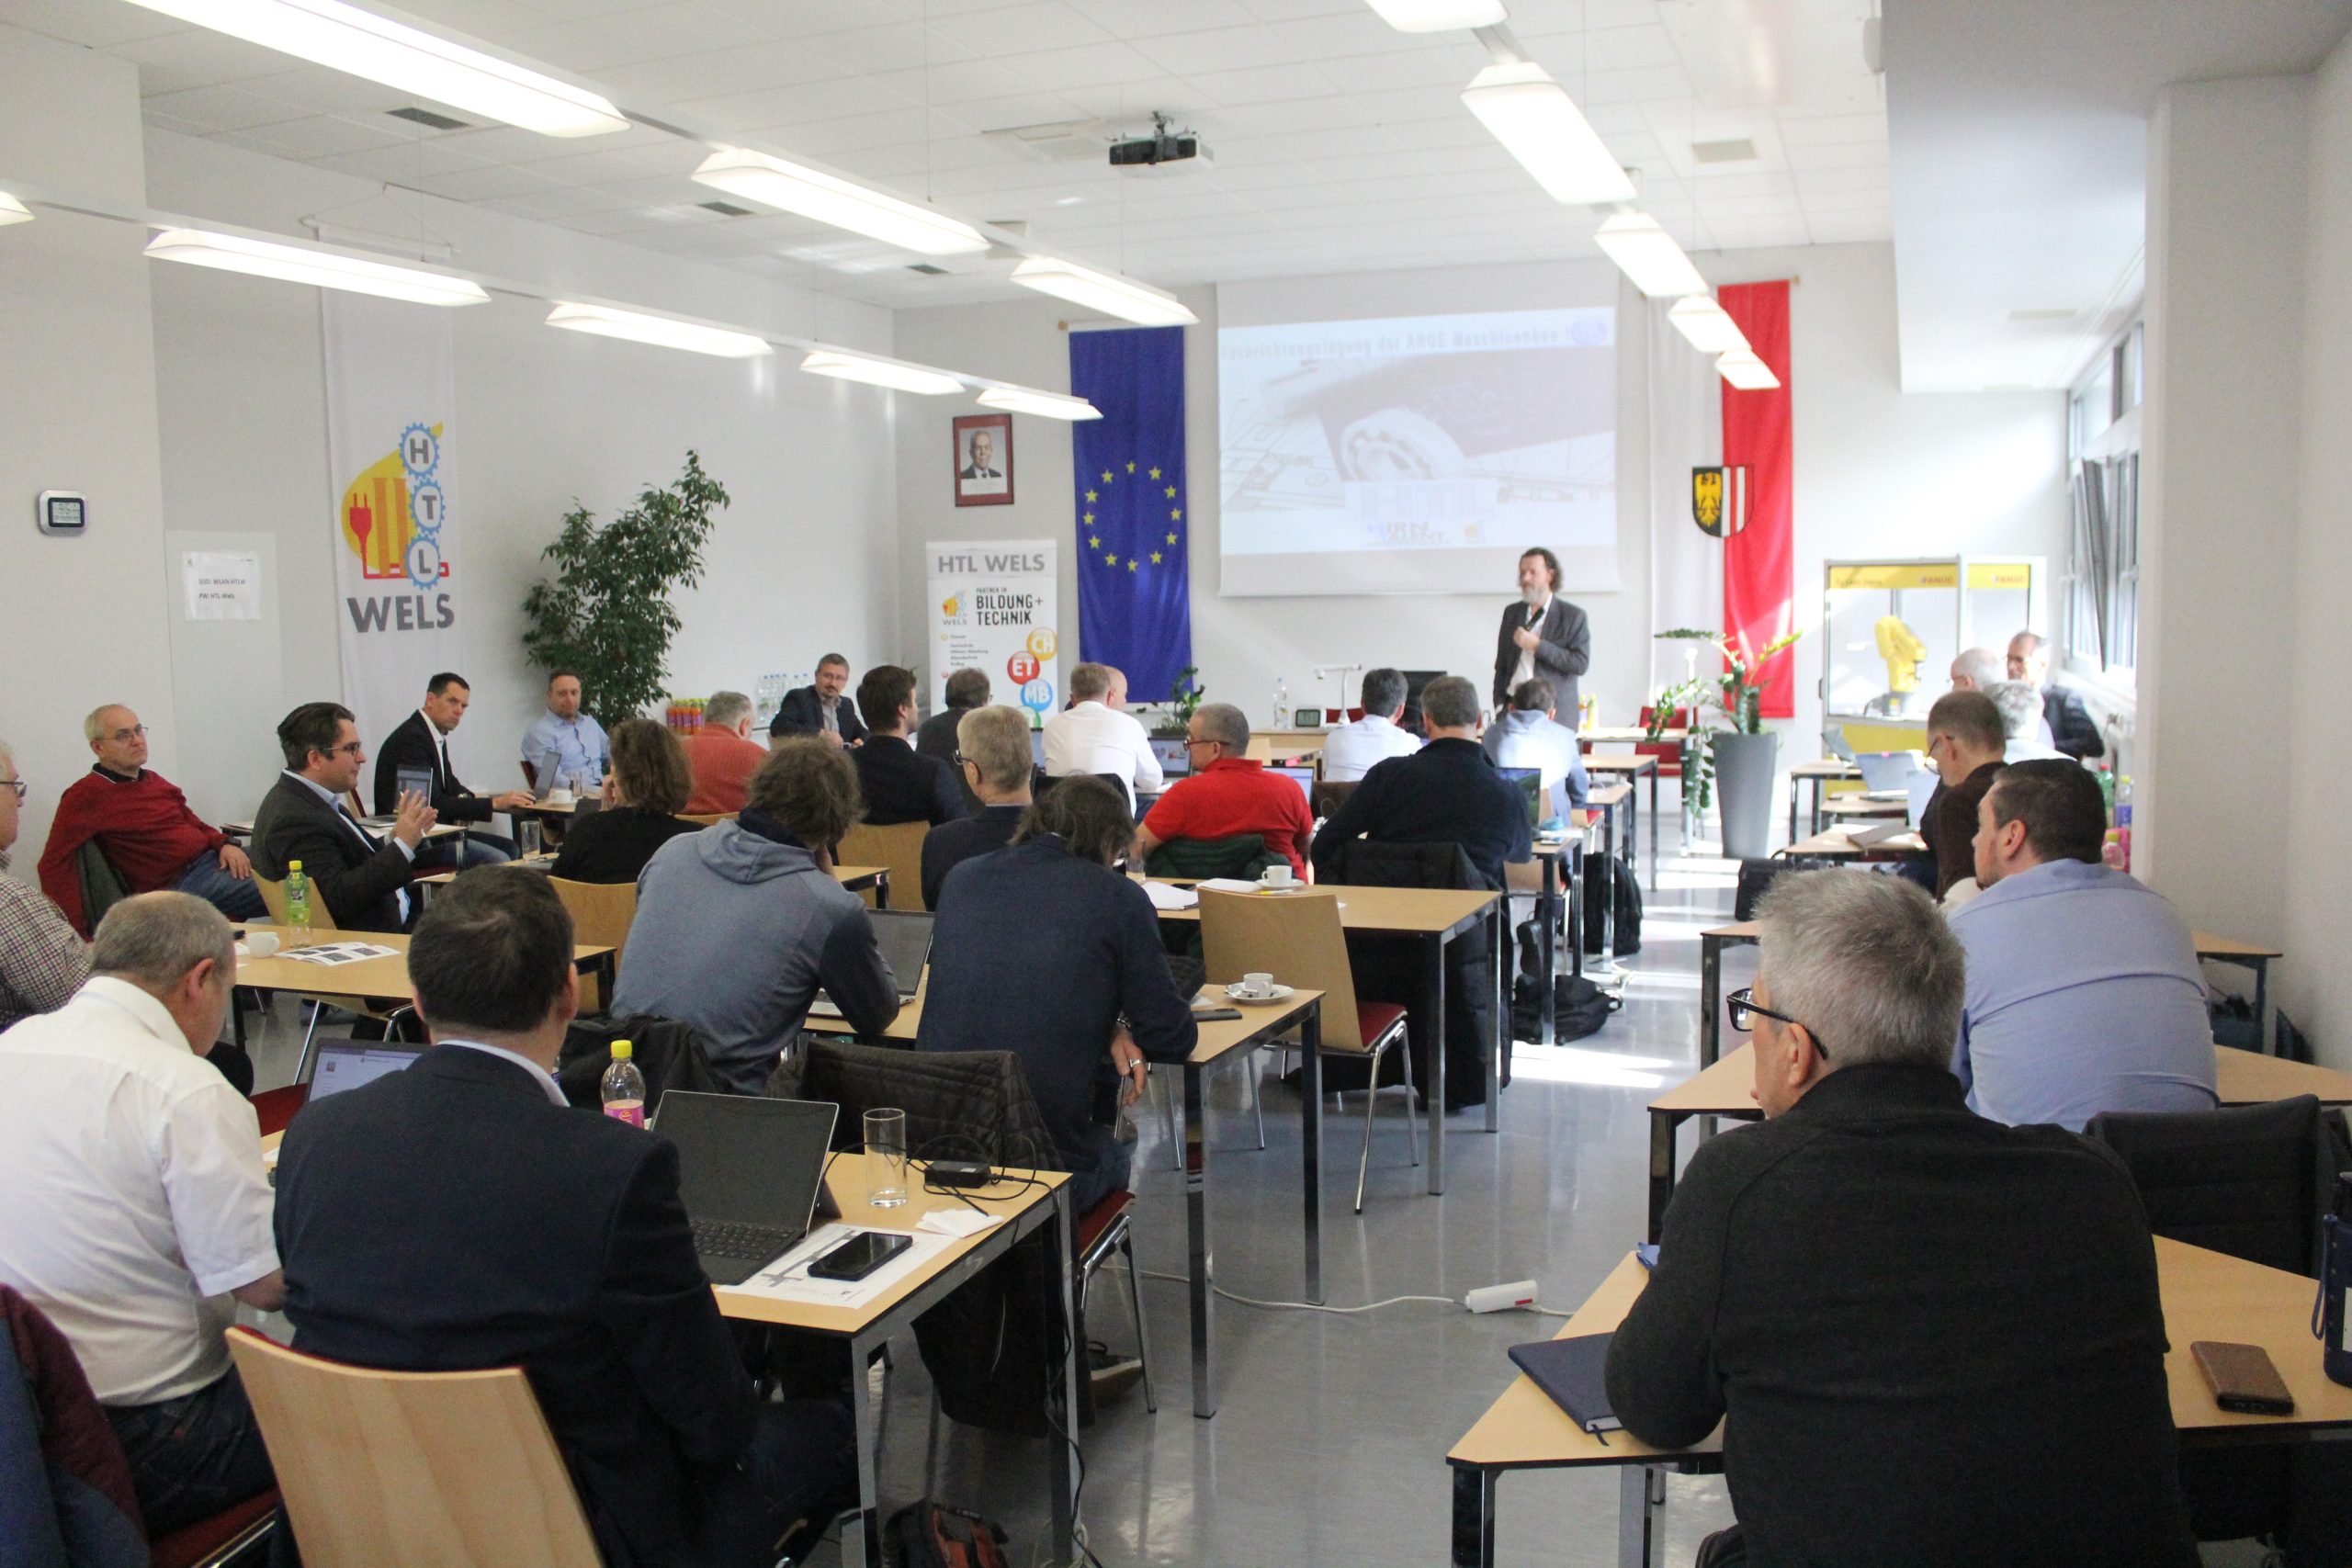 HTL Wels begrüßt Abteilungsvorstände aus ganz Österreich zur Fachbereichstagung Maschinenbau